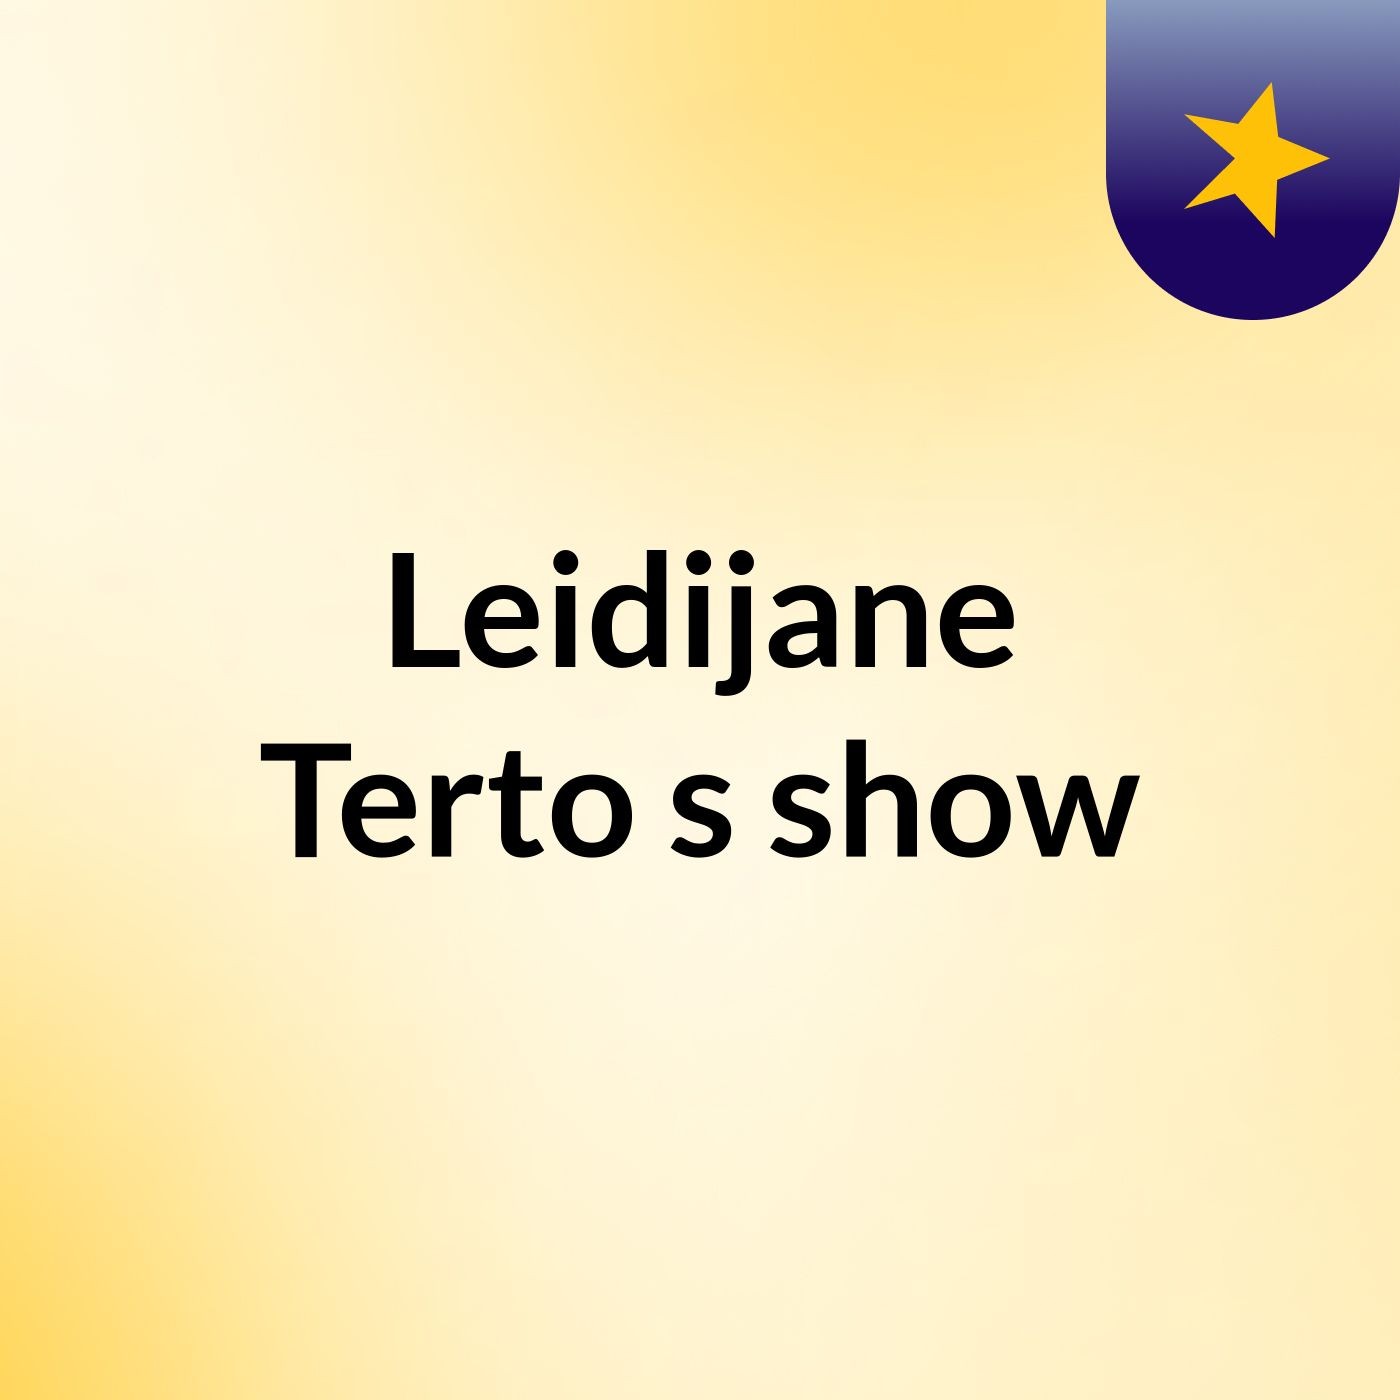 Leidijane Terto's show